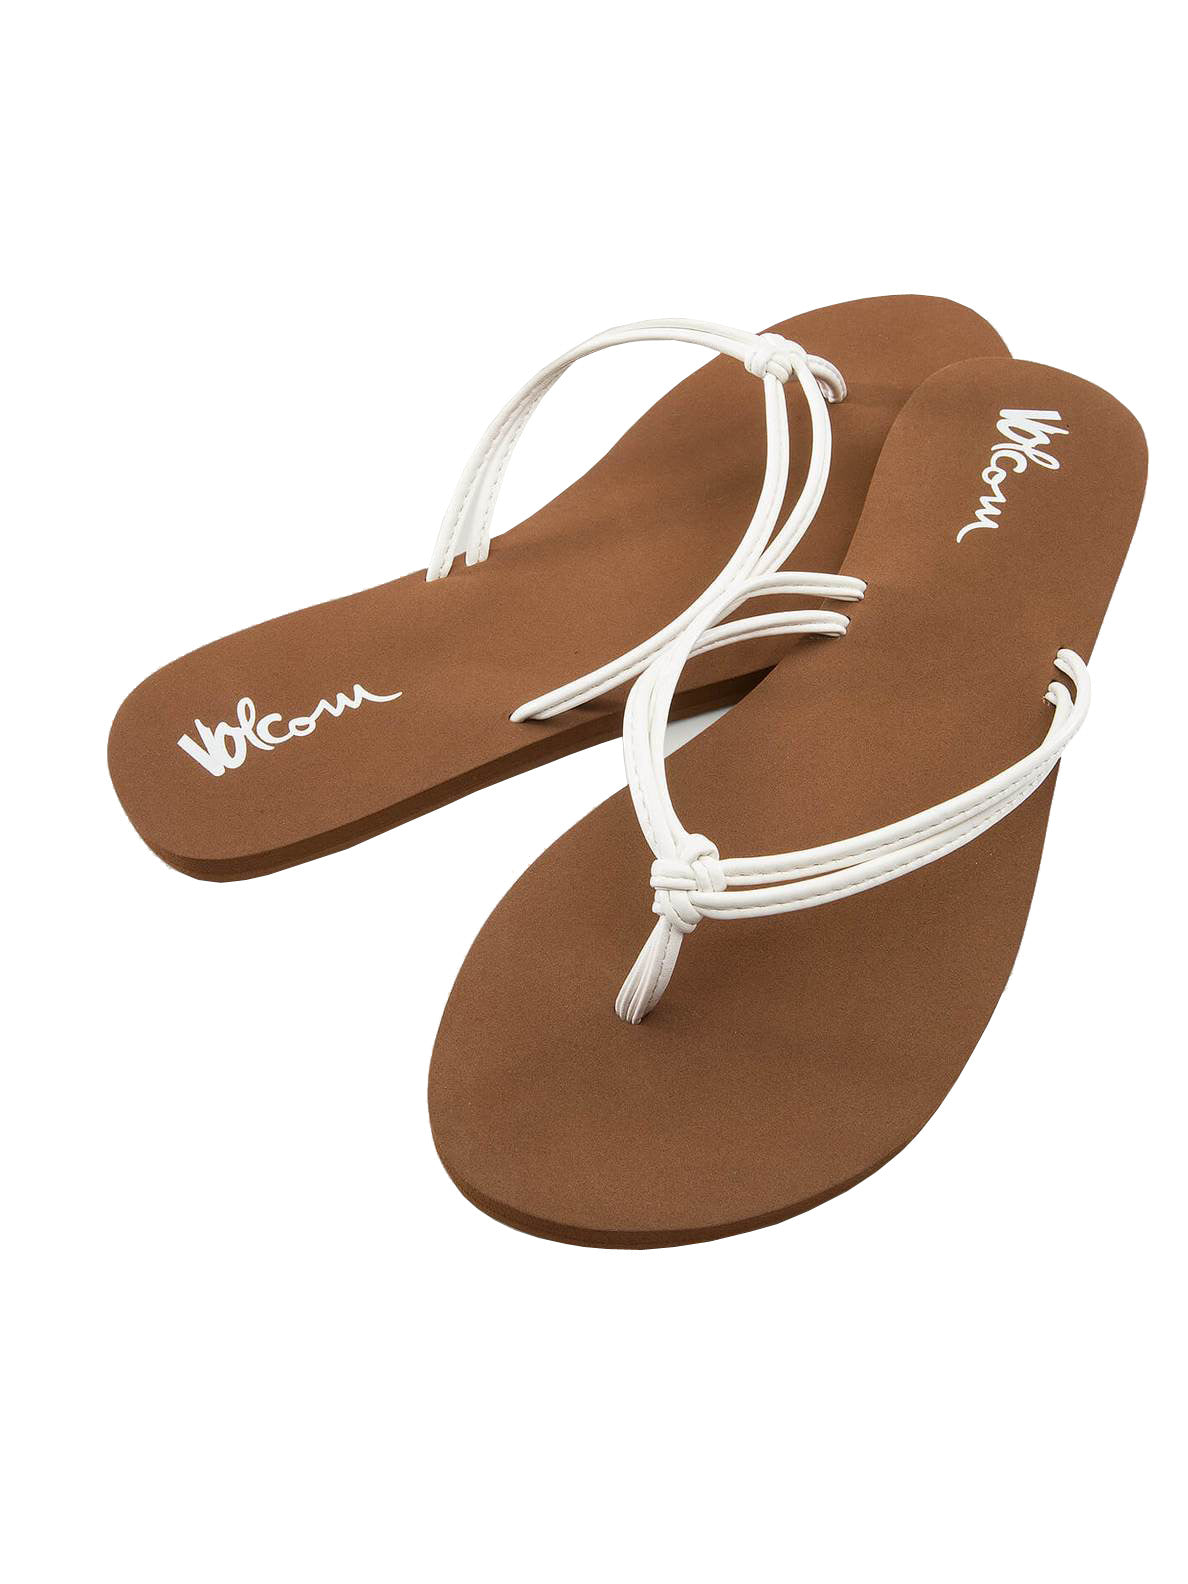 Volcom Forever and Ever 2 Womens Sandal WHT-White 6